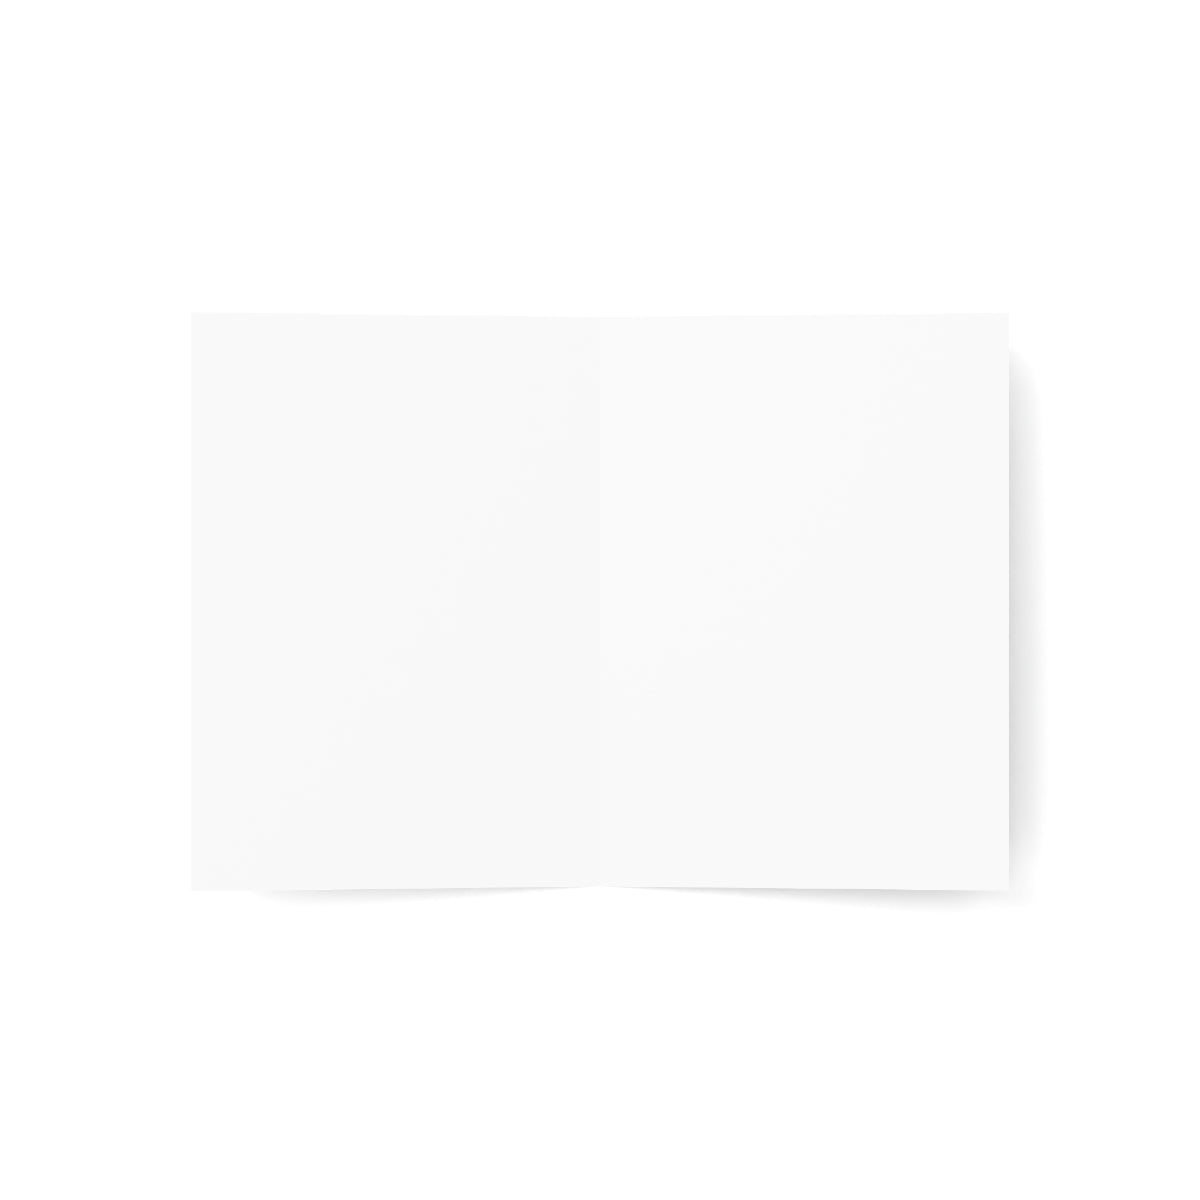 Big Sur gefaltete matte Notizkarten + Umschläge (10 Stück) 